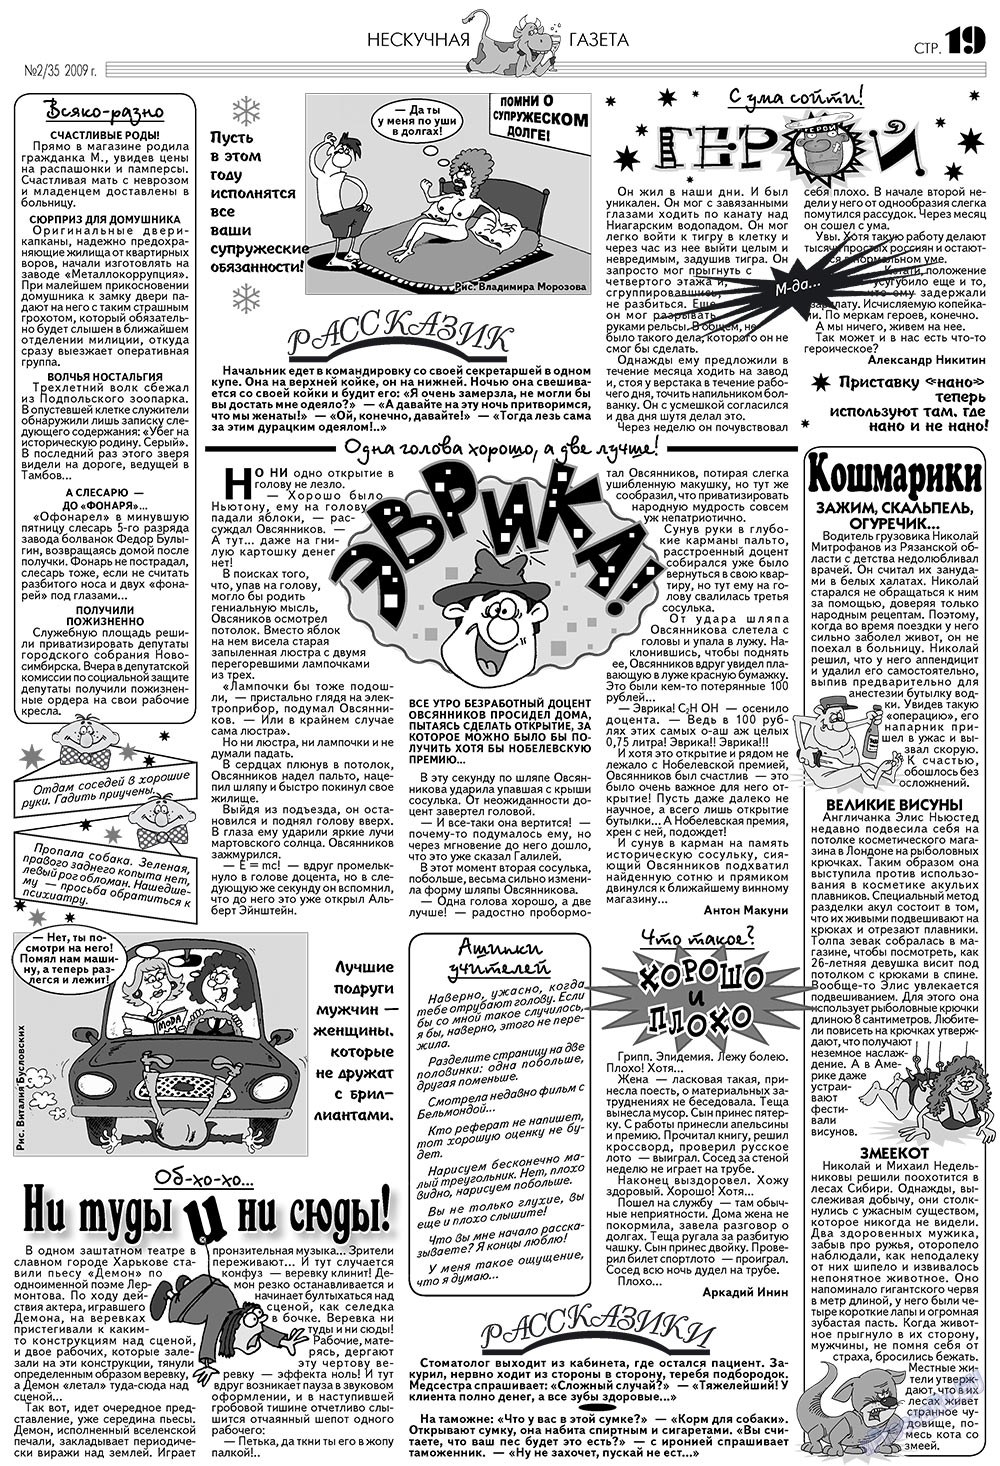 Нескучная газета (журнал). 2009 год, номер 2, стр. 15